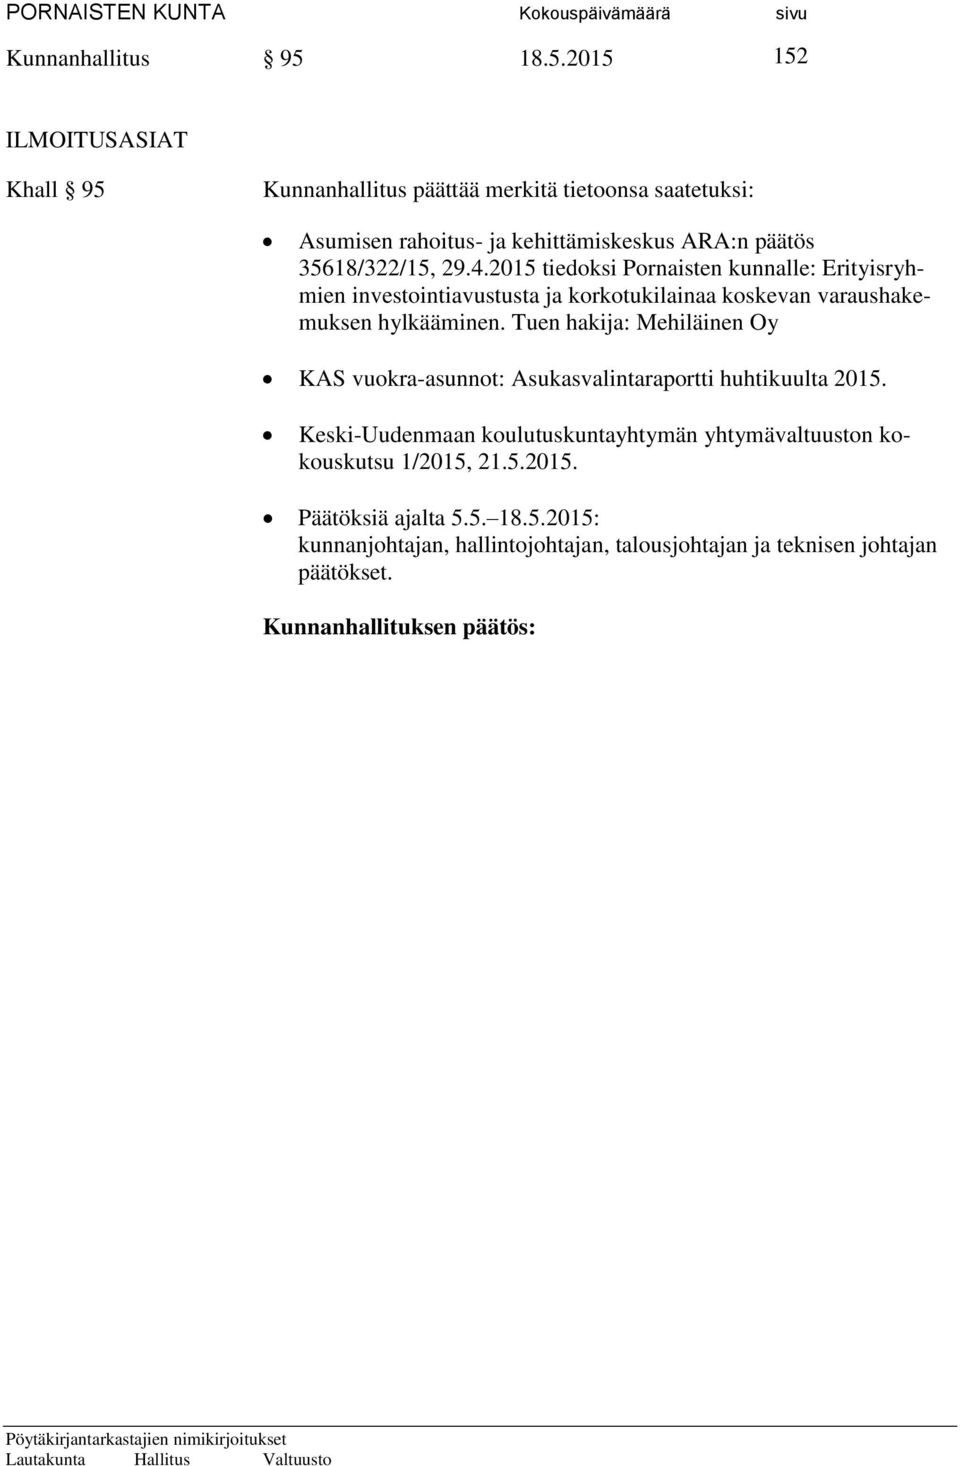 35618/322/15, 29.4.2015 tiedoksi Pornaisten kunnalle: Erityisryhmien investointiavustusta ja korkotukilainaa koskevan varaushakemuksen hylkääminen.